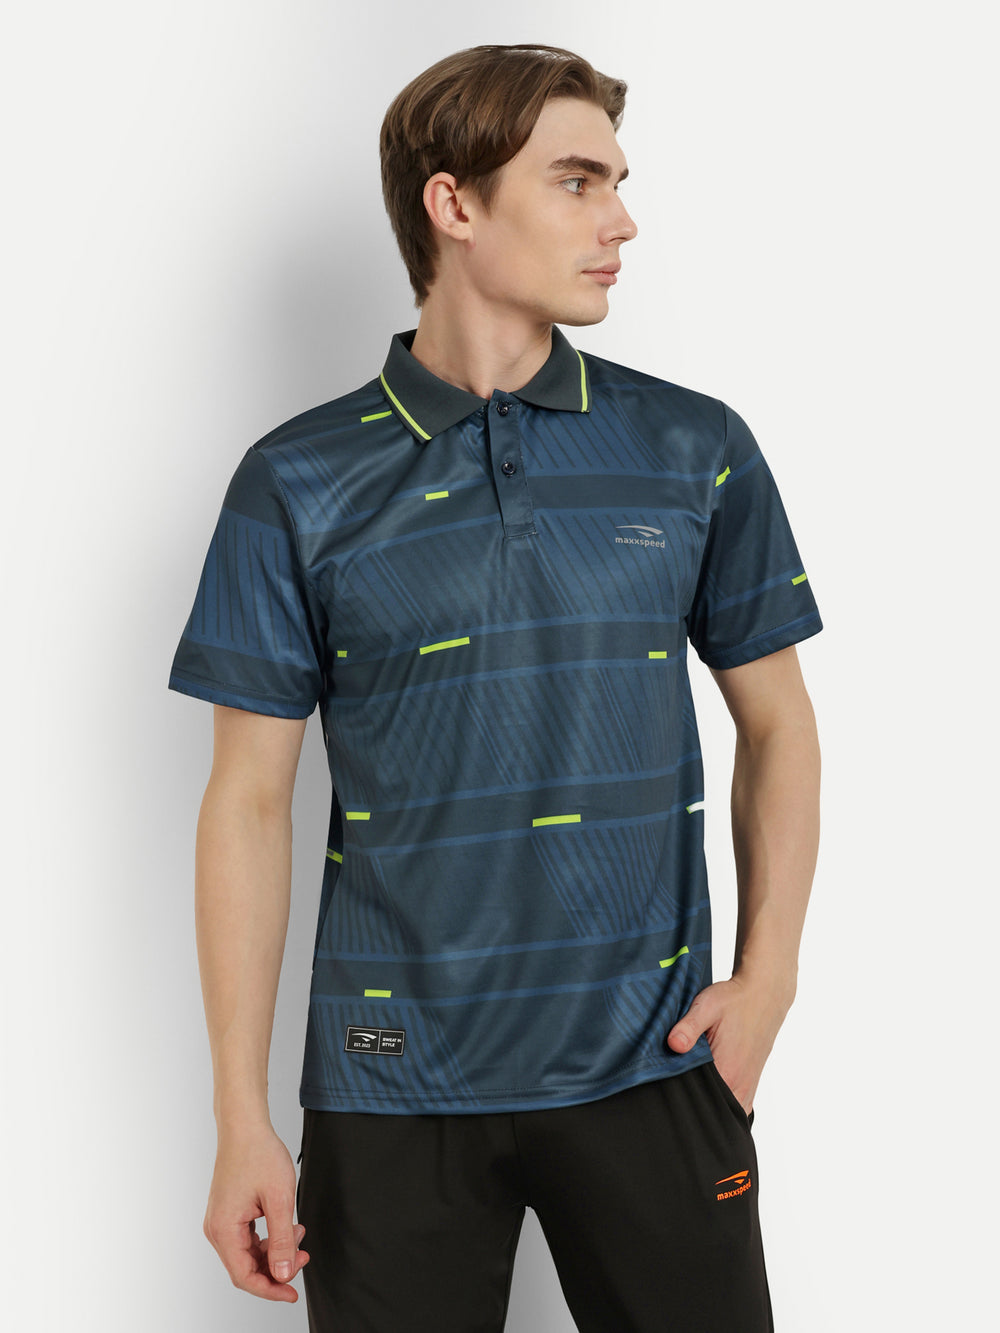 Teal blue Graphic Badminton Tshirt